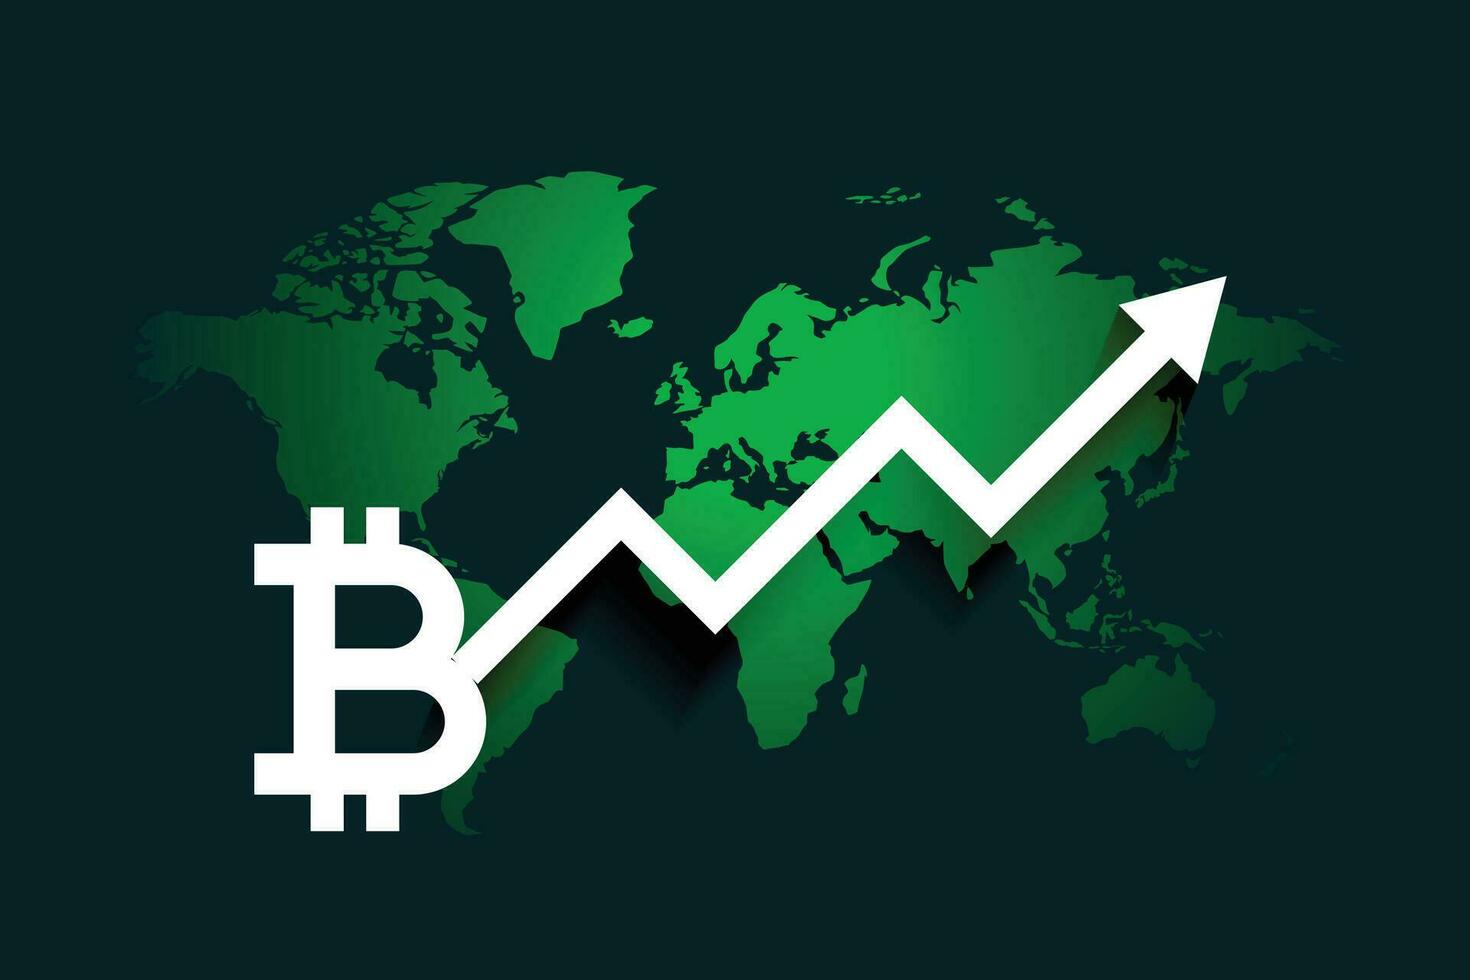 global bitcoin growth arrow chart background vector